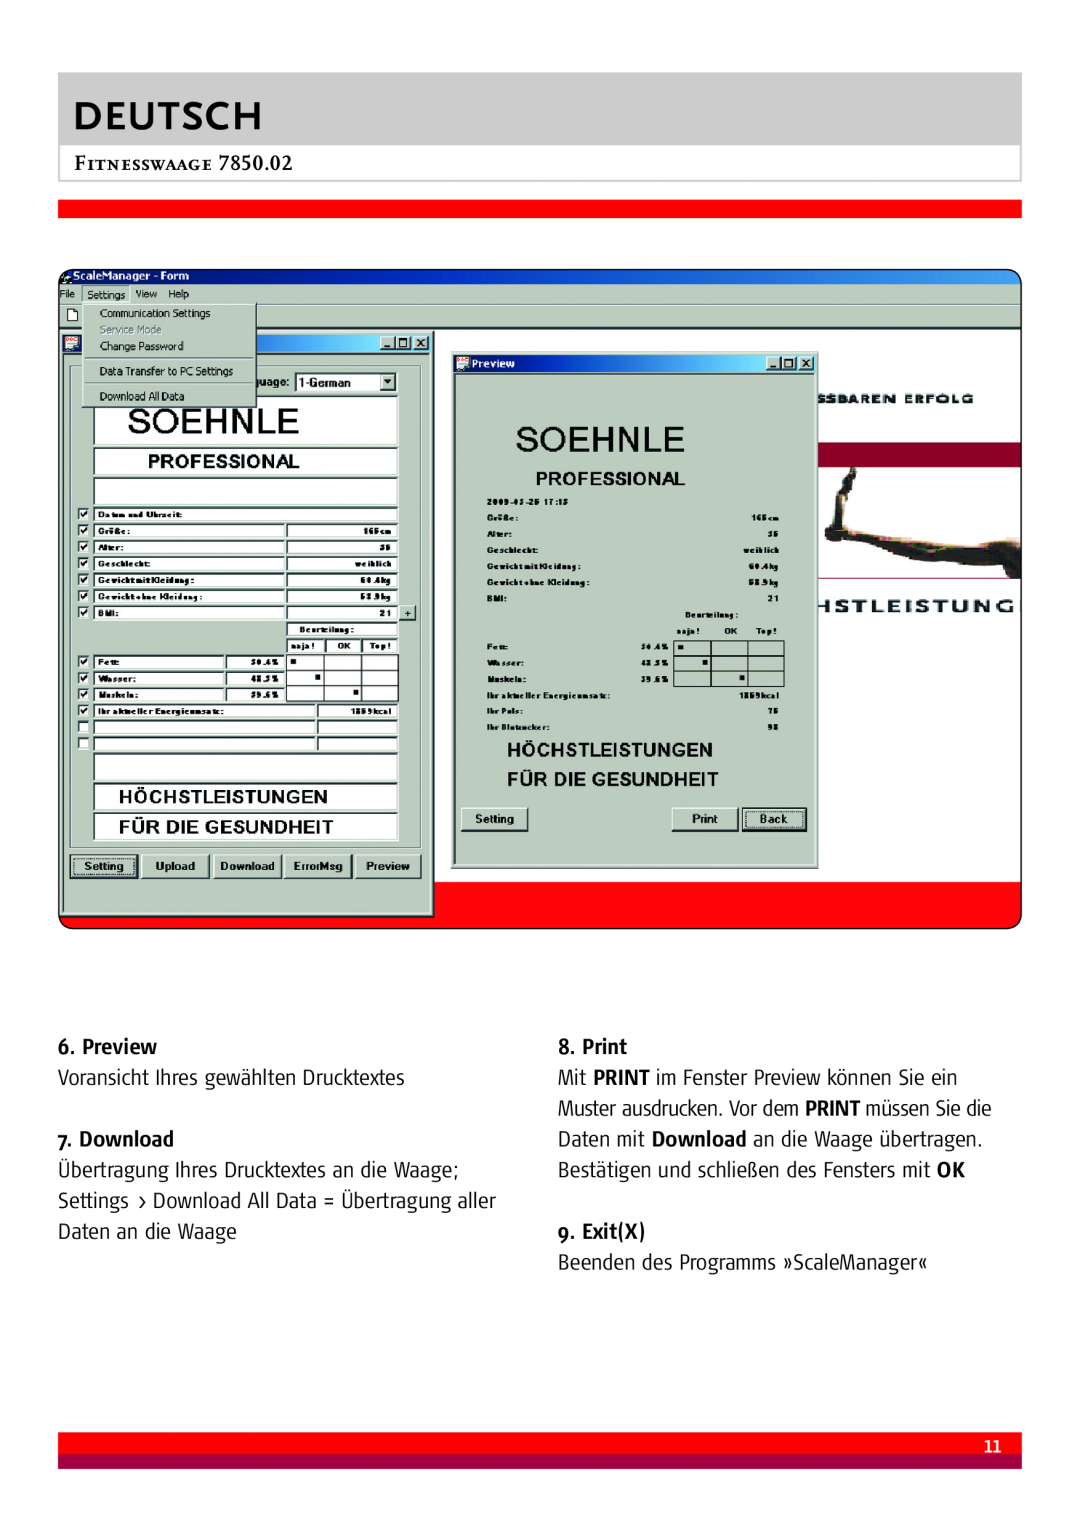 Soehnle 7850.02 manual Preview, Download, Print, ExitX, Deutsch, Fitnesswaage 